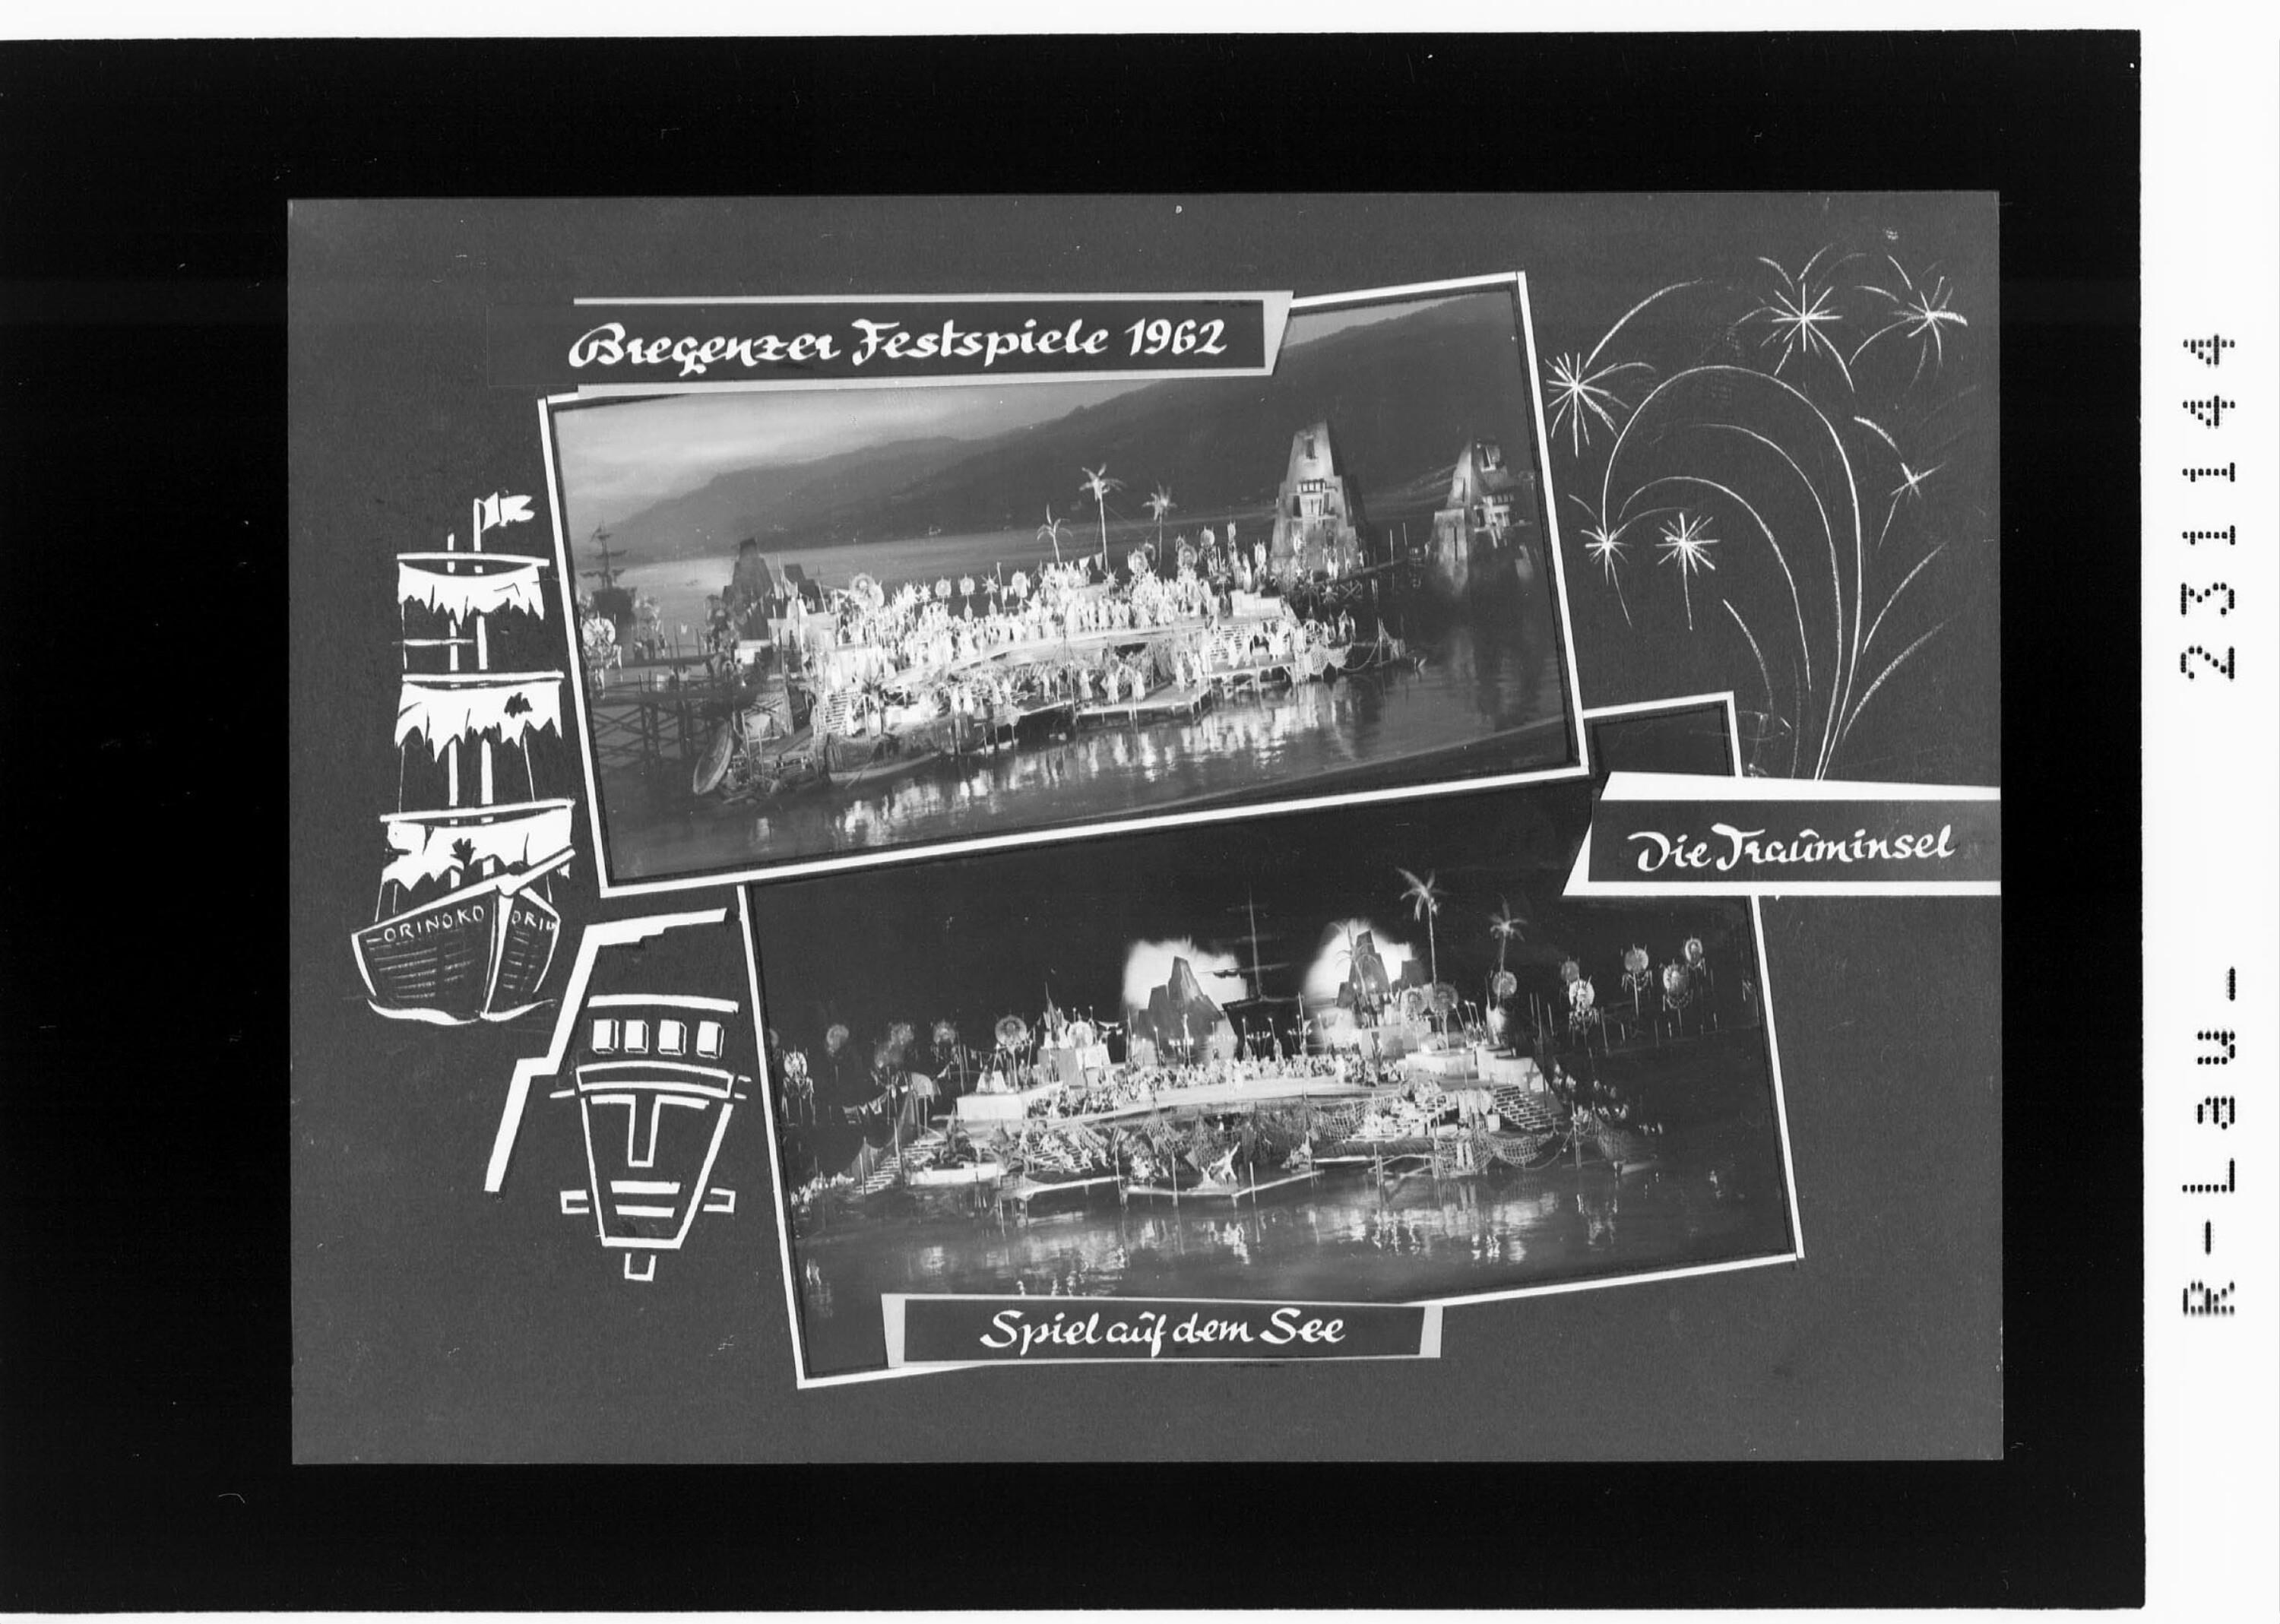 Bregenzer Festspiele 1962 / Spiel auf dem See - Die Trauminsel></div>


    <hr>
    <div class=